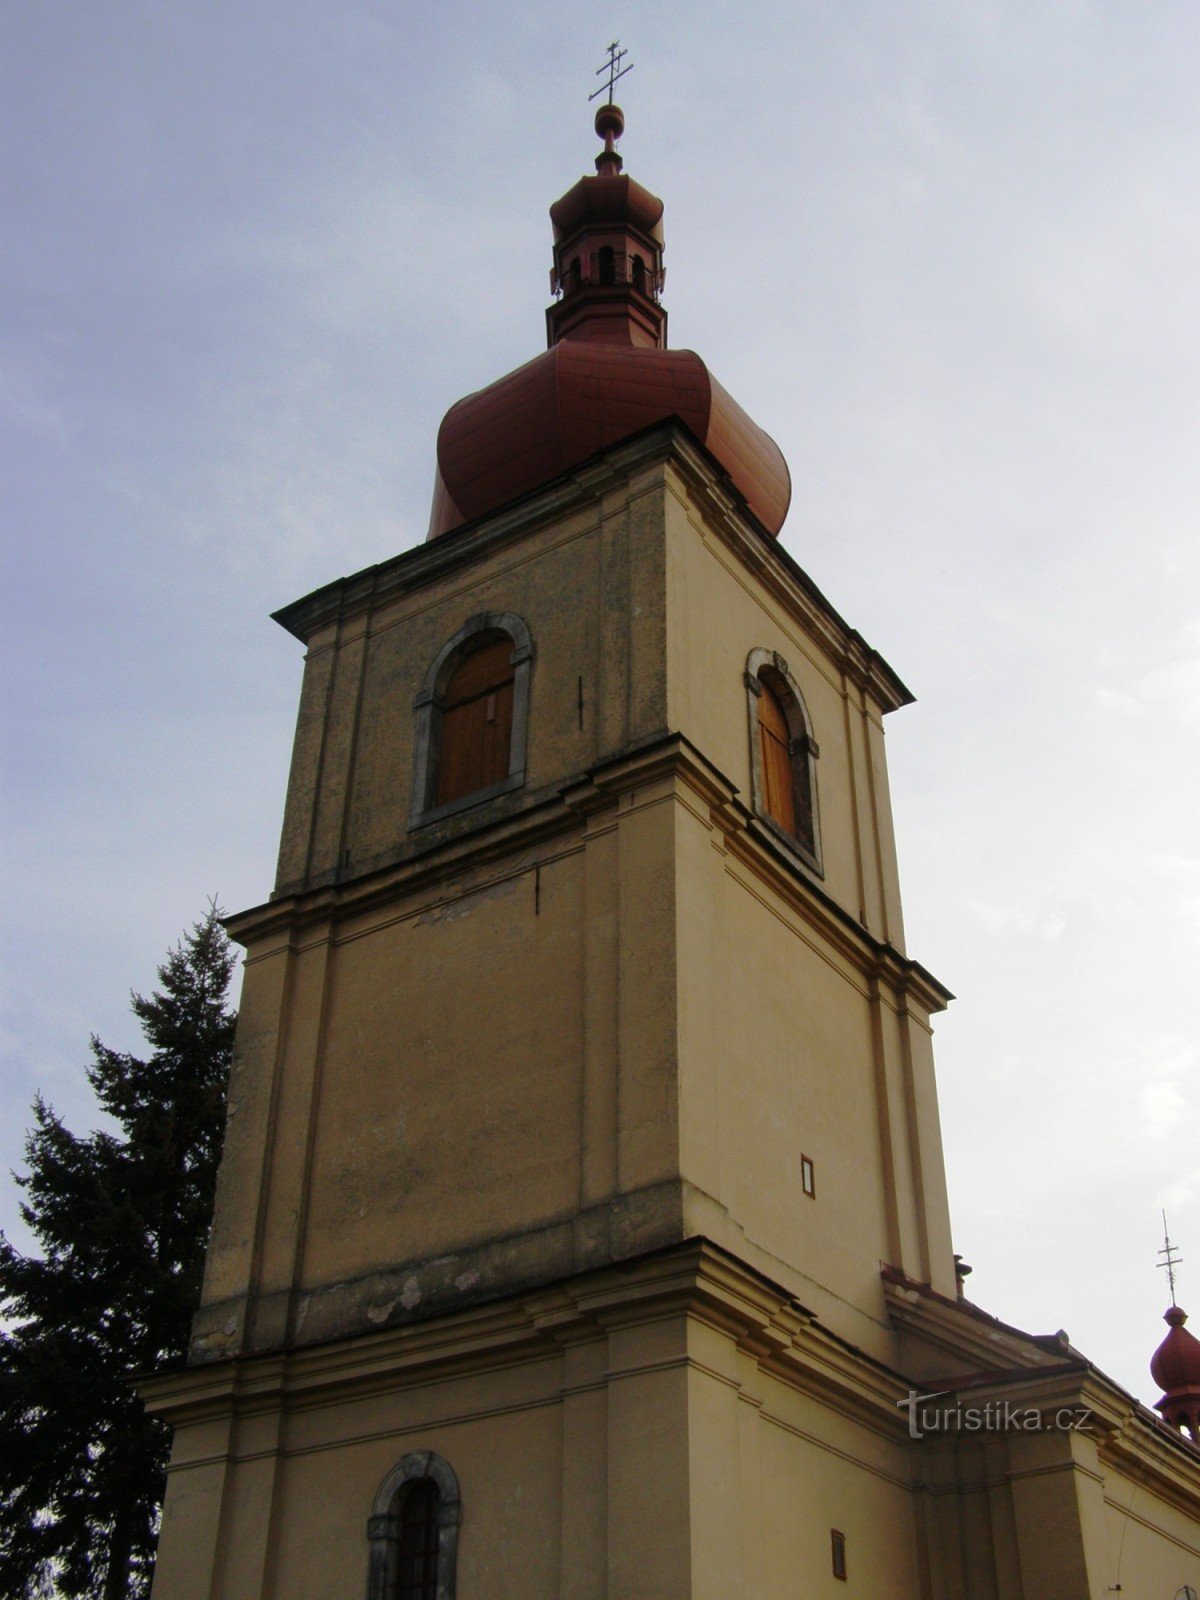 Хвалковице - церковь св. Лили